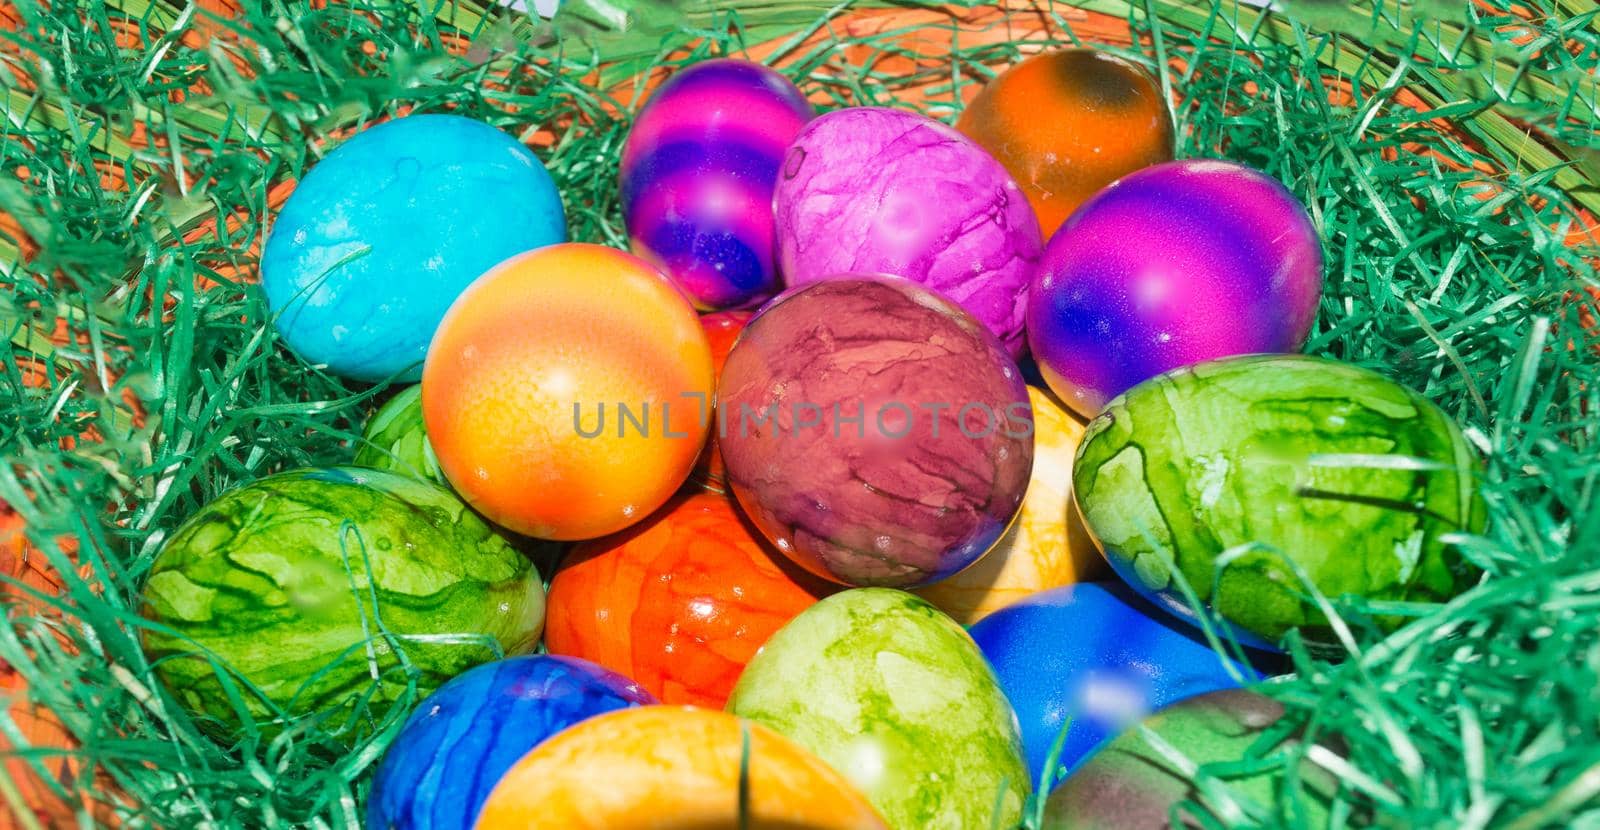 Colorful Easter basket or basket      by JFsPic